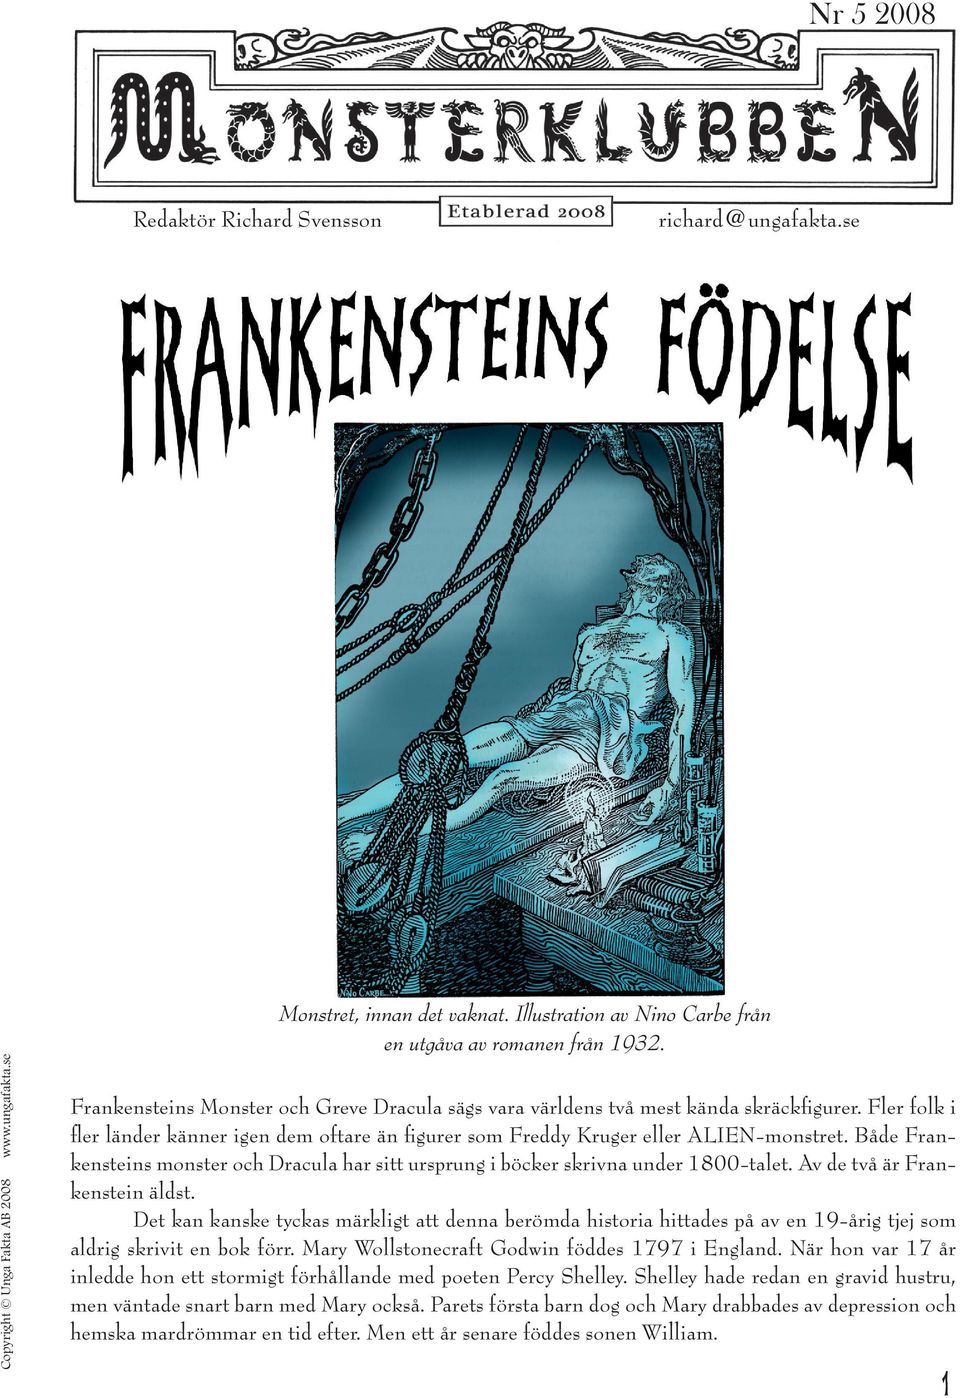 Både Frankensteins monster och Dracula har sitt ursprung i böcker skrivna under 1800-talet. Av de två är Frankenstein äldst.